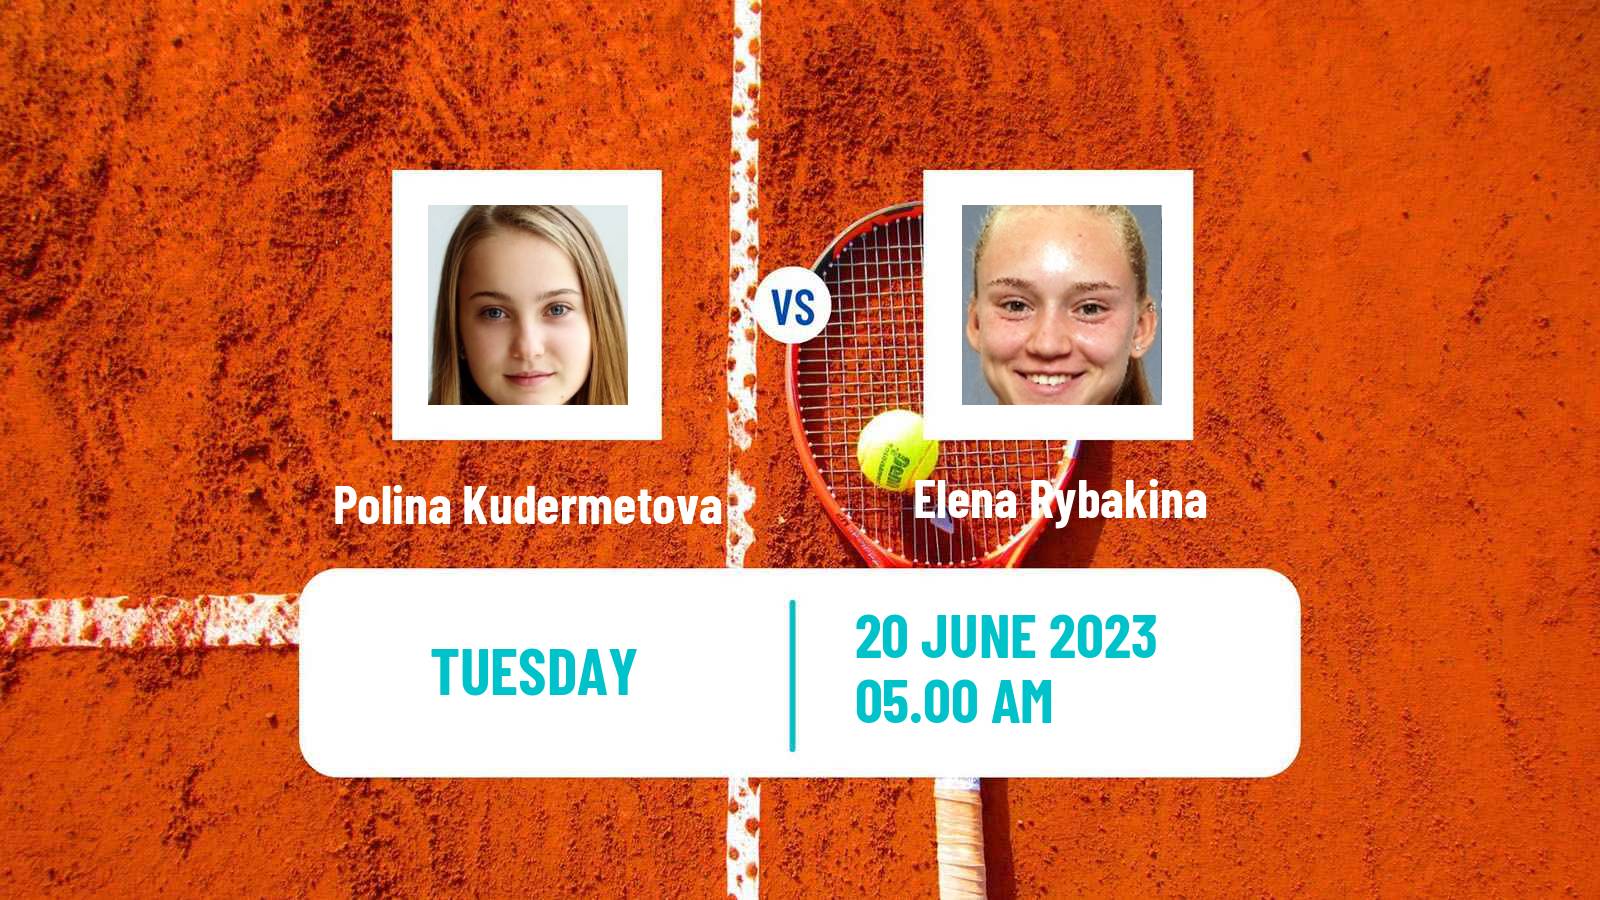 Tennis WTA Berlin Polina Kudermetova - Elena Rybakina